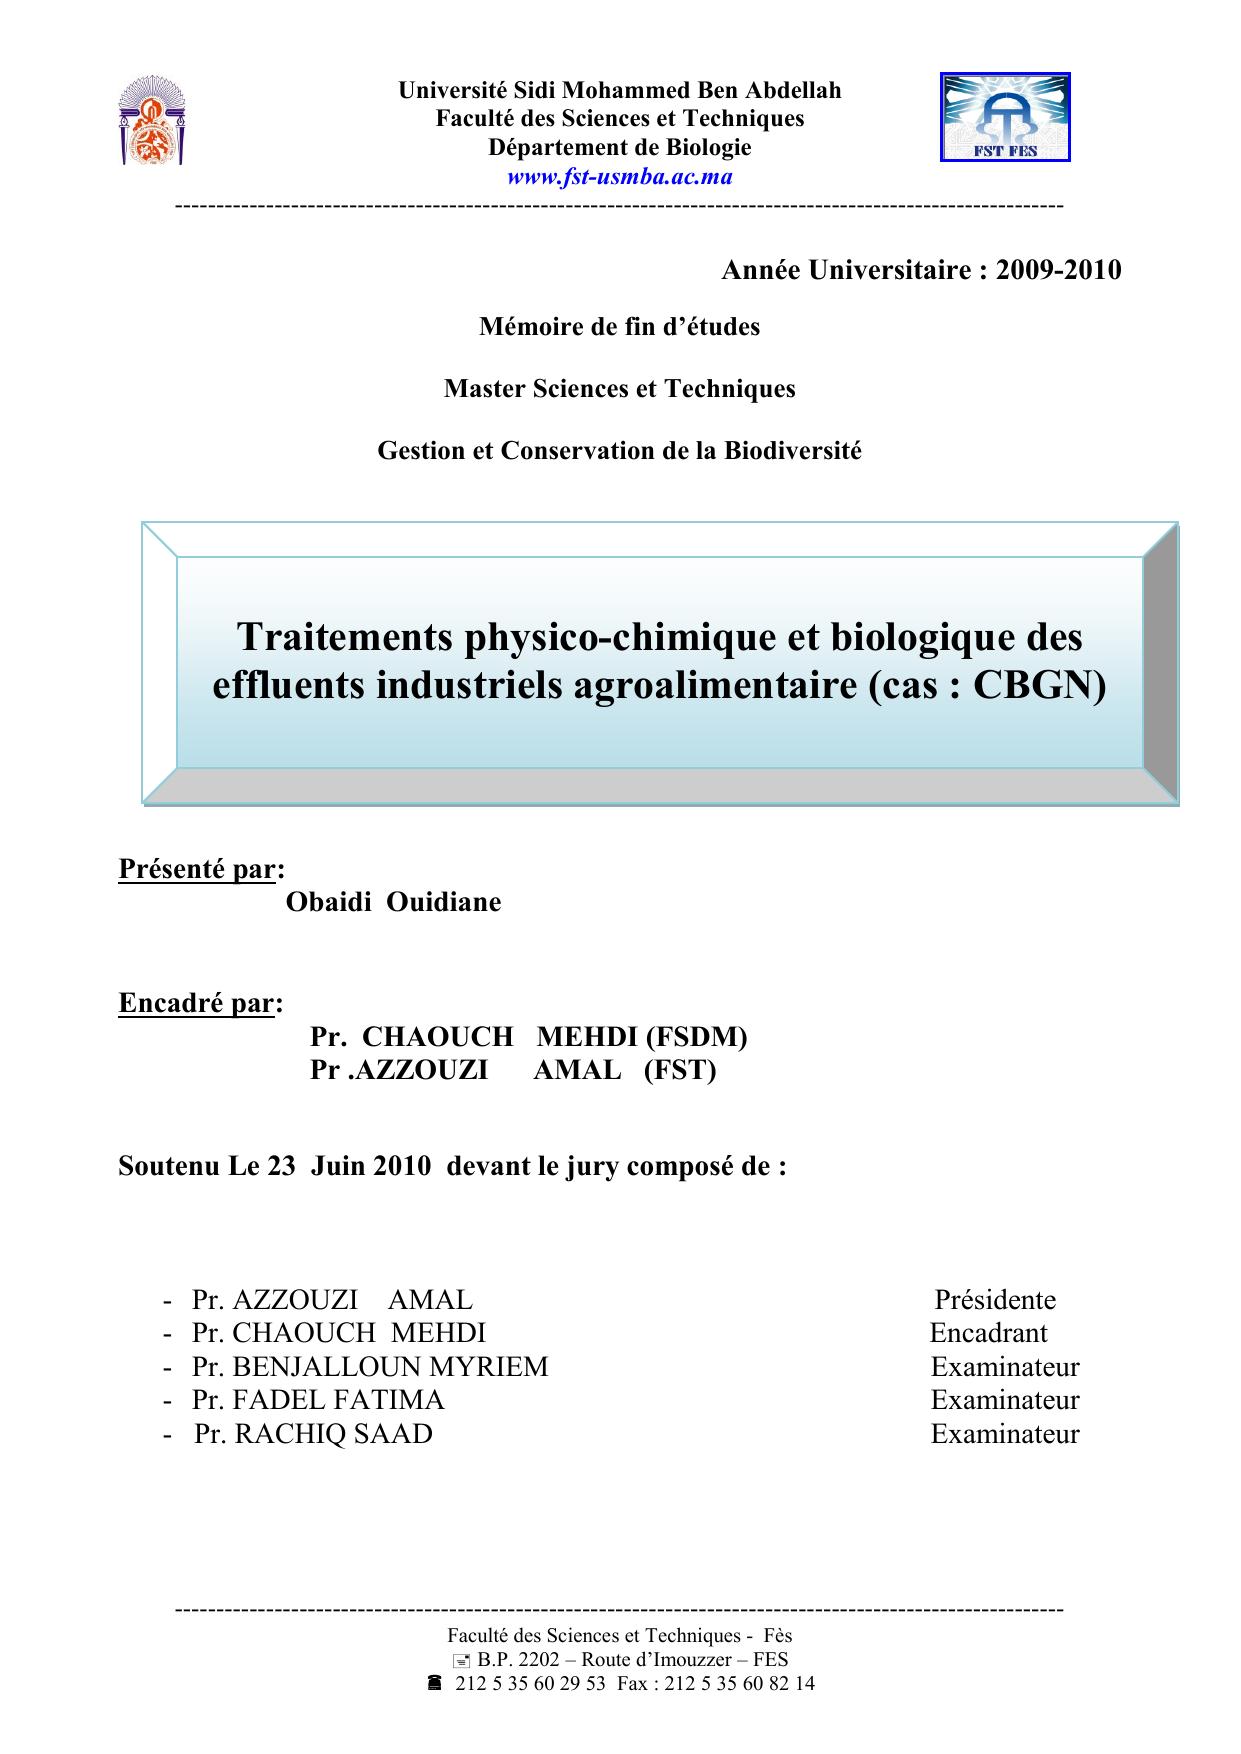 Traitements physico-chimique et biologique des effluents industriels agroalimentaire (cas : CBGN)